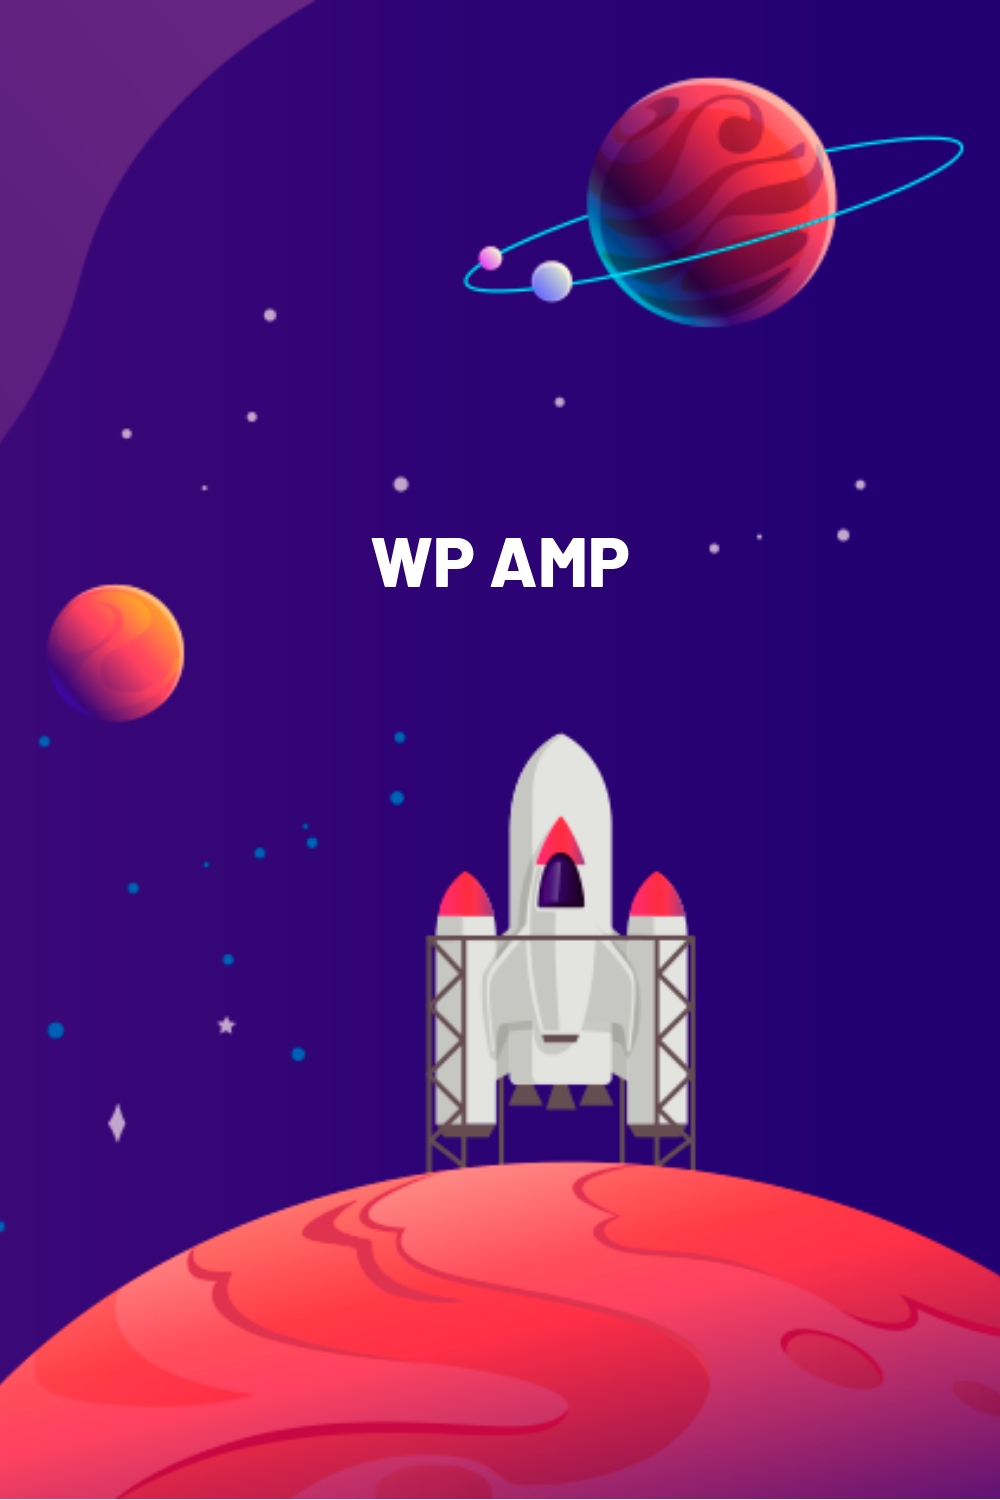 WP AMP